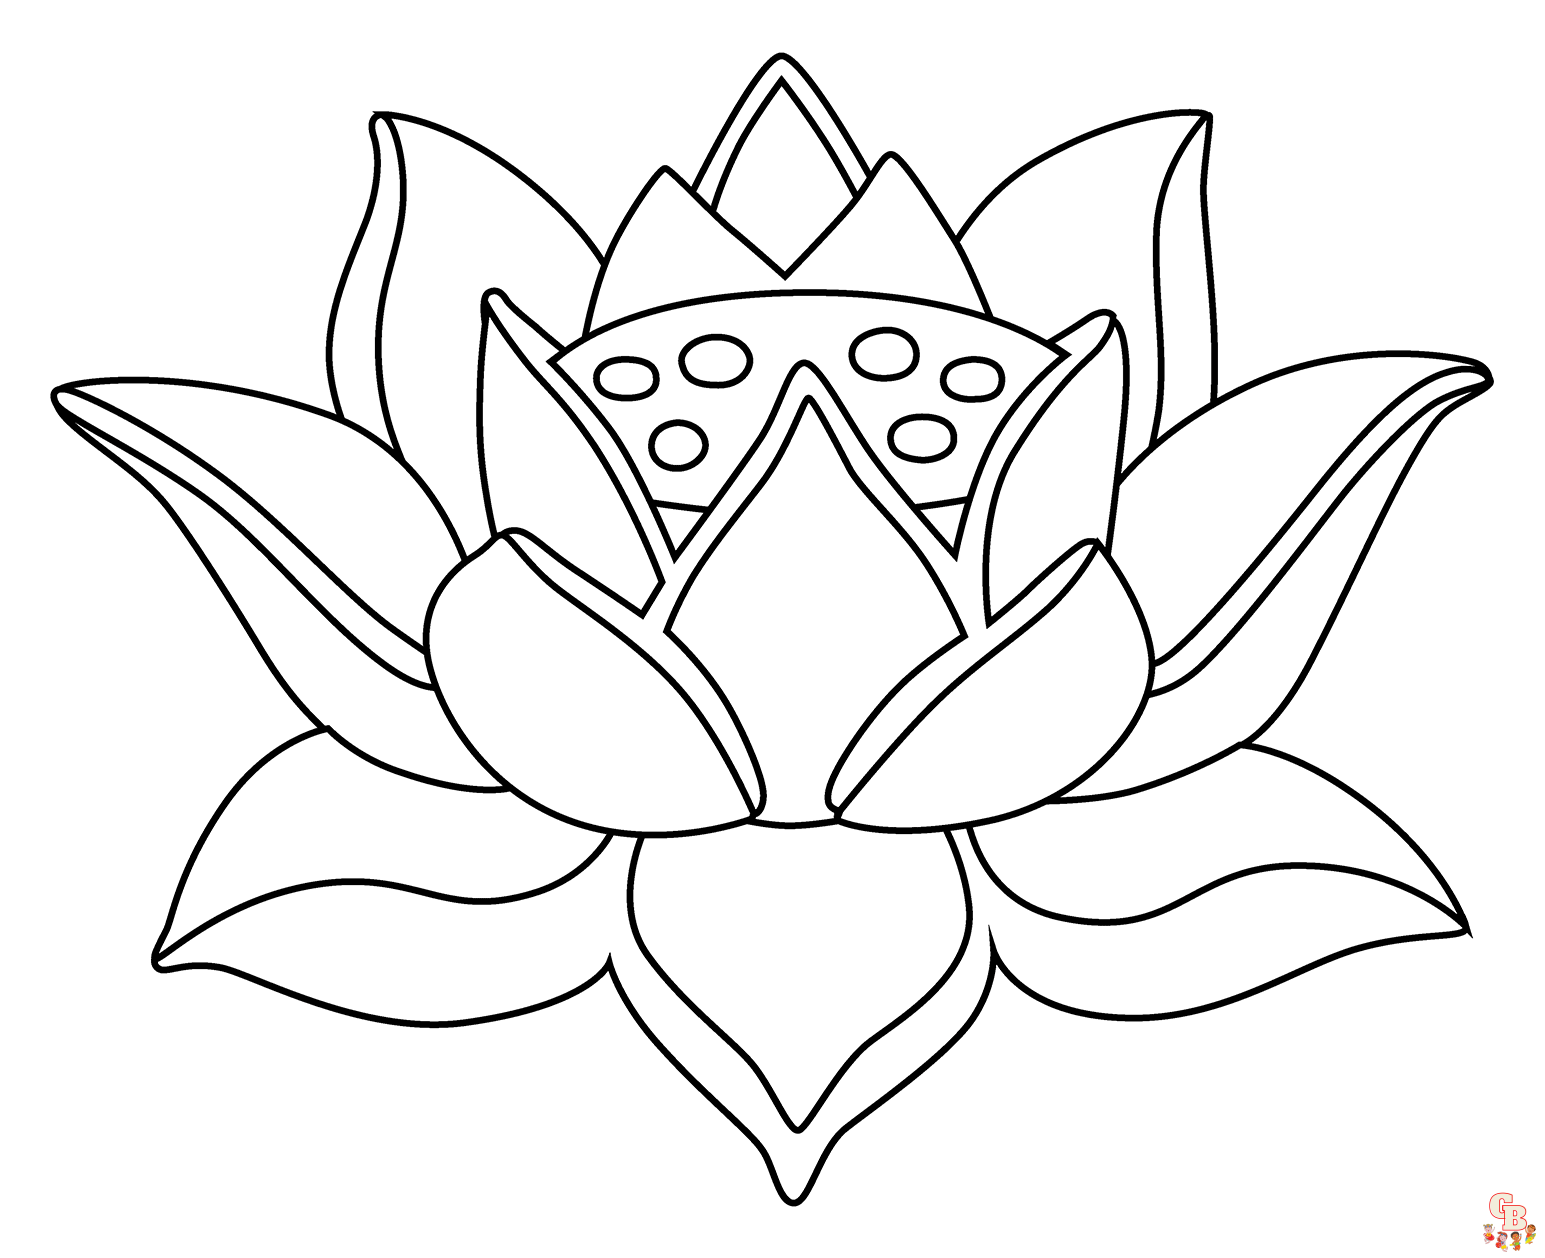 Lotusblueten zum ausdrucken